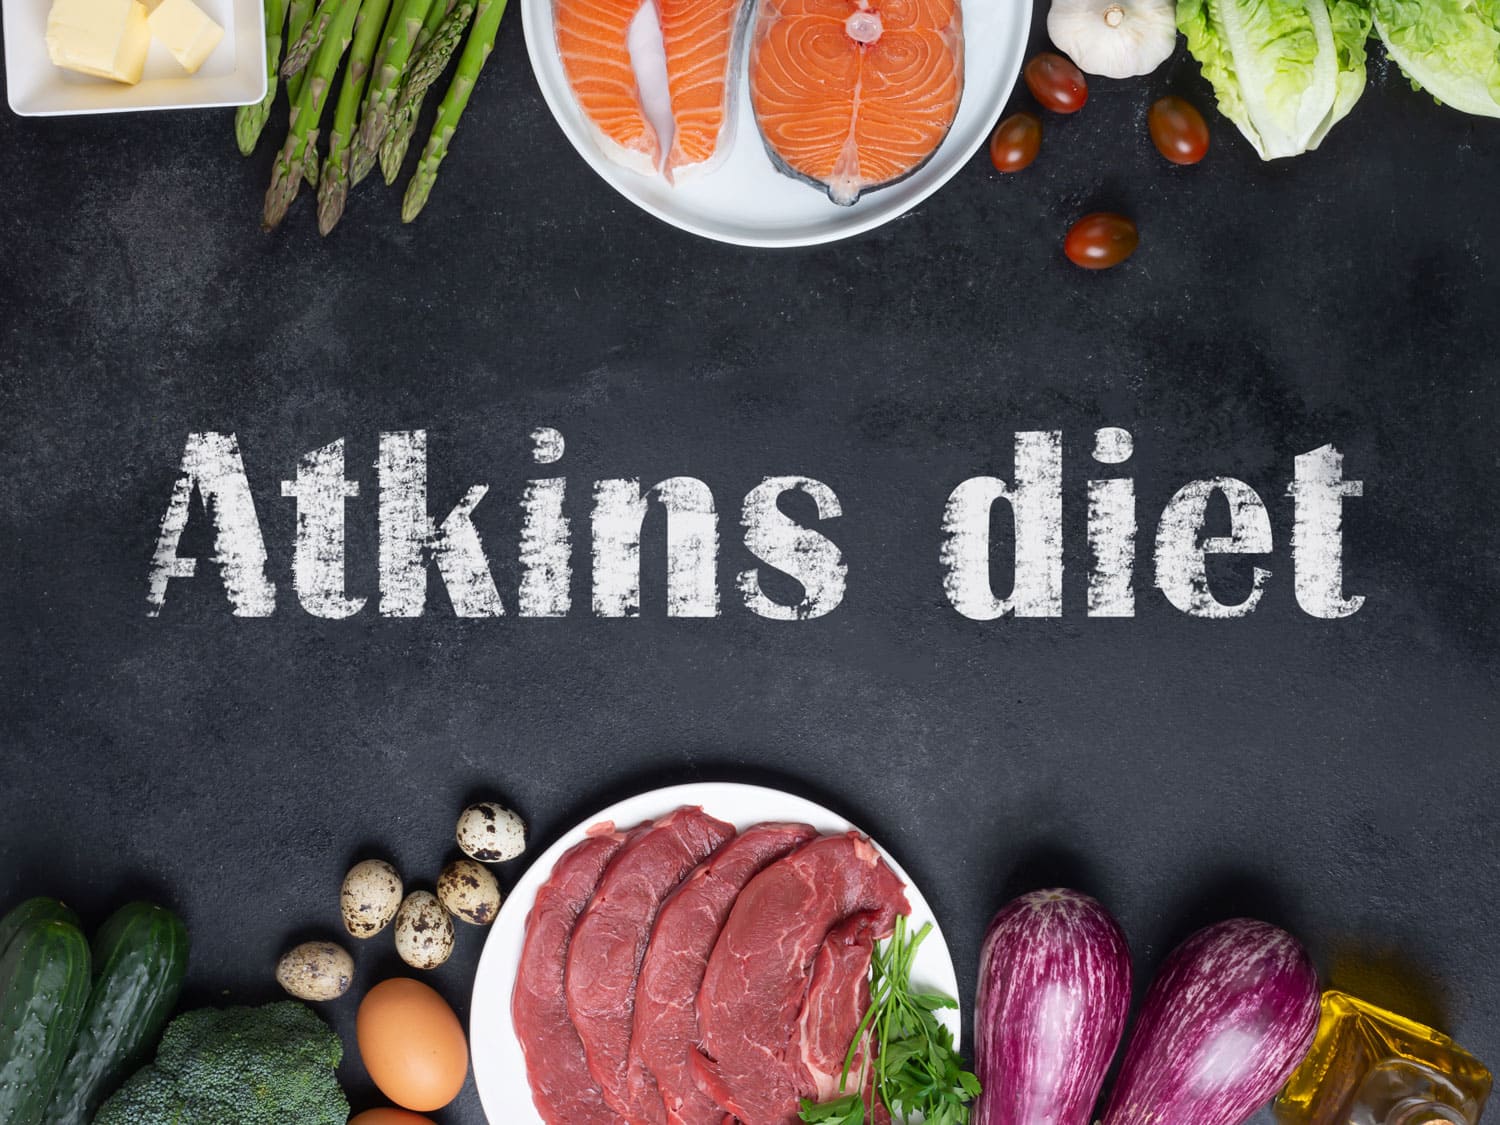 chế độ ăn kiêng atkins là gì